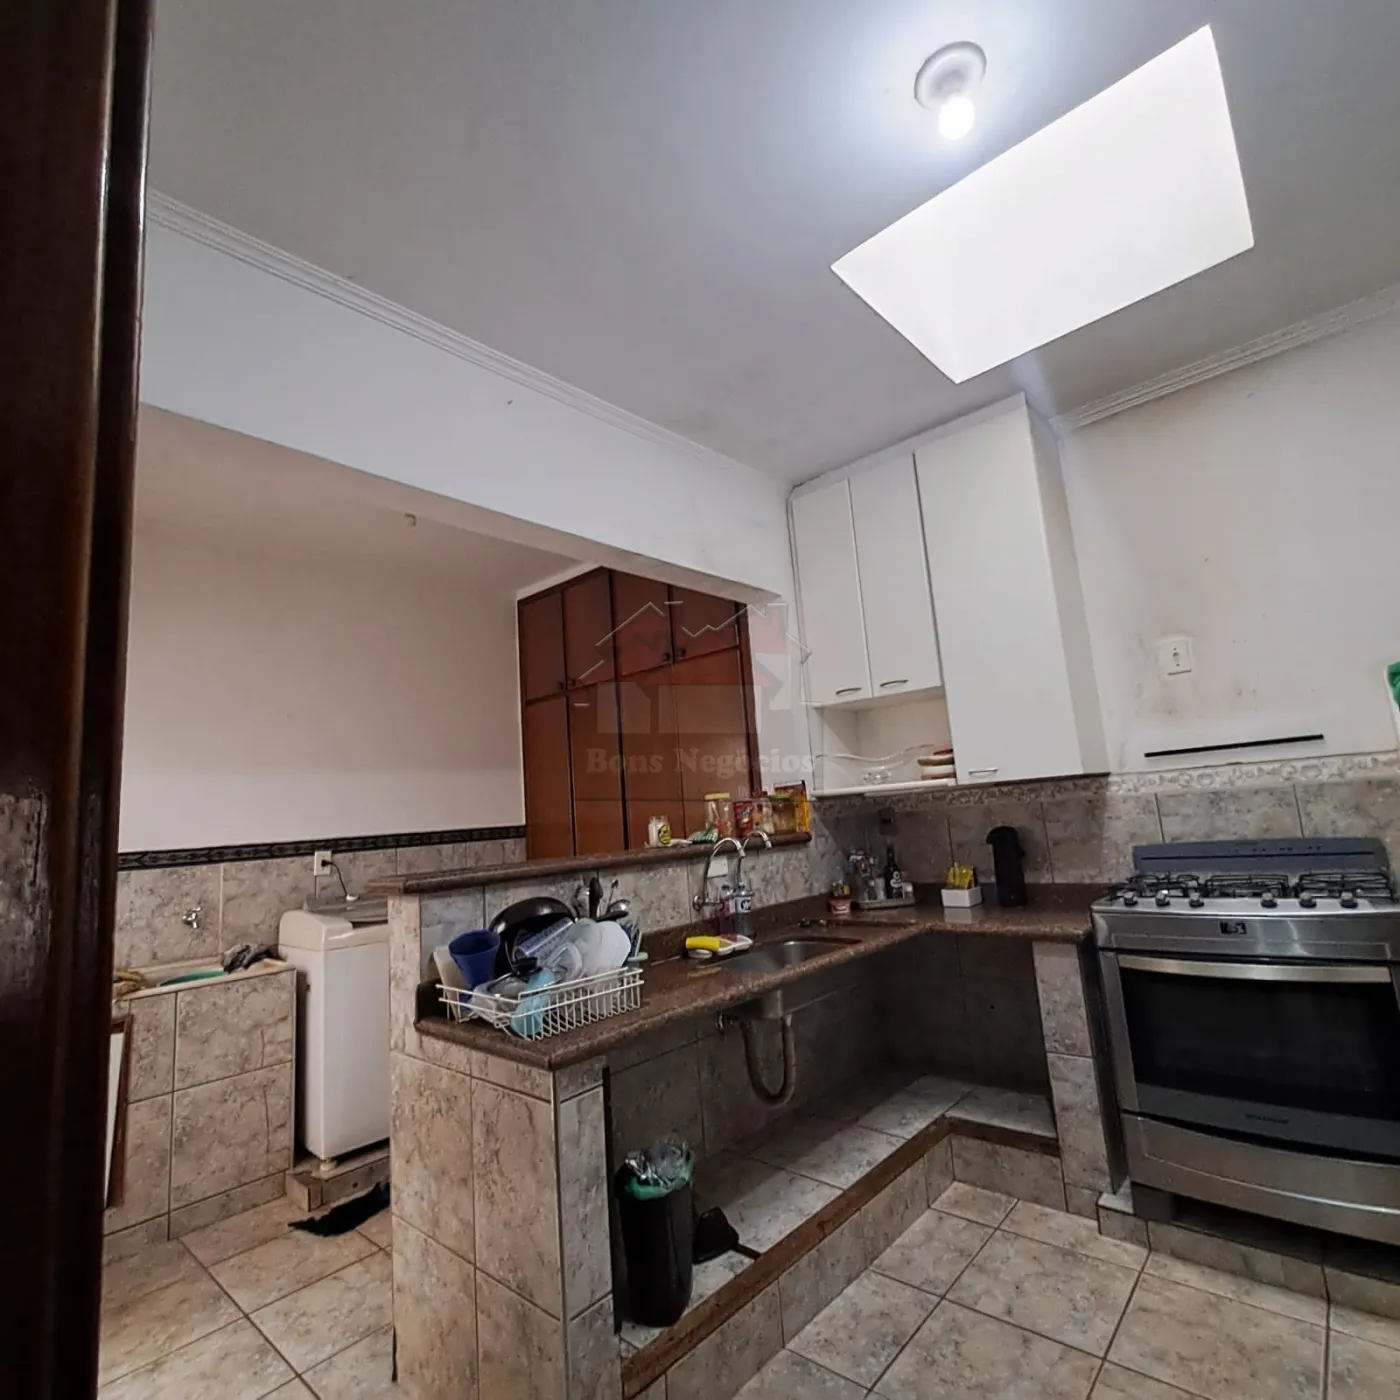 Comprar Casa / Padrão em Ribeirão Preto R$ 450.000,00 - Foto 2